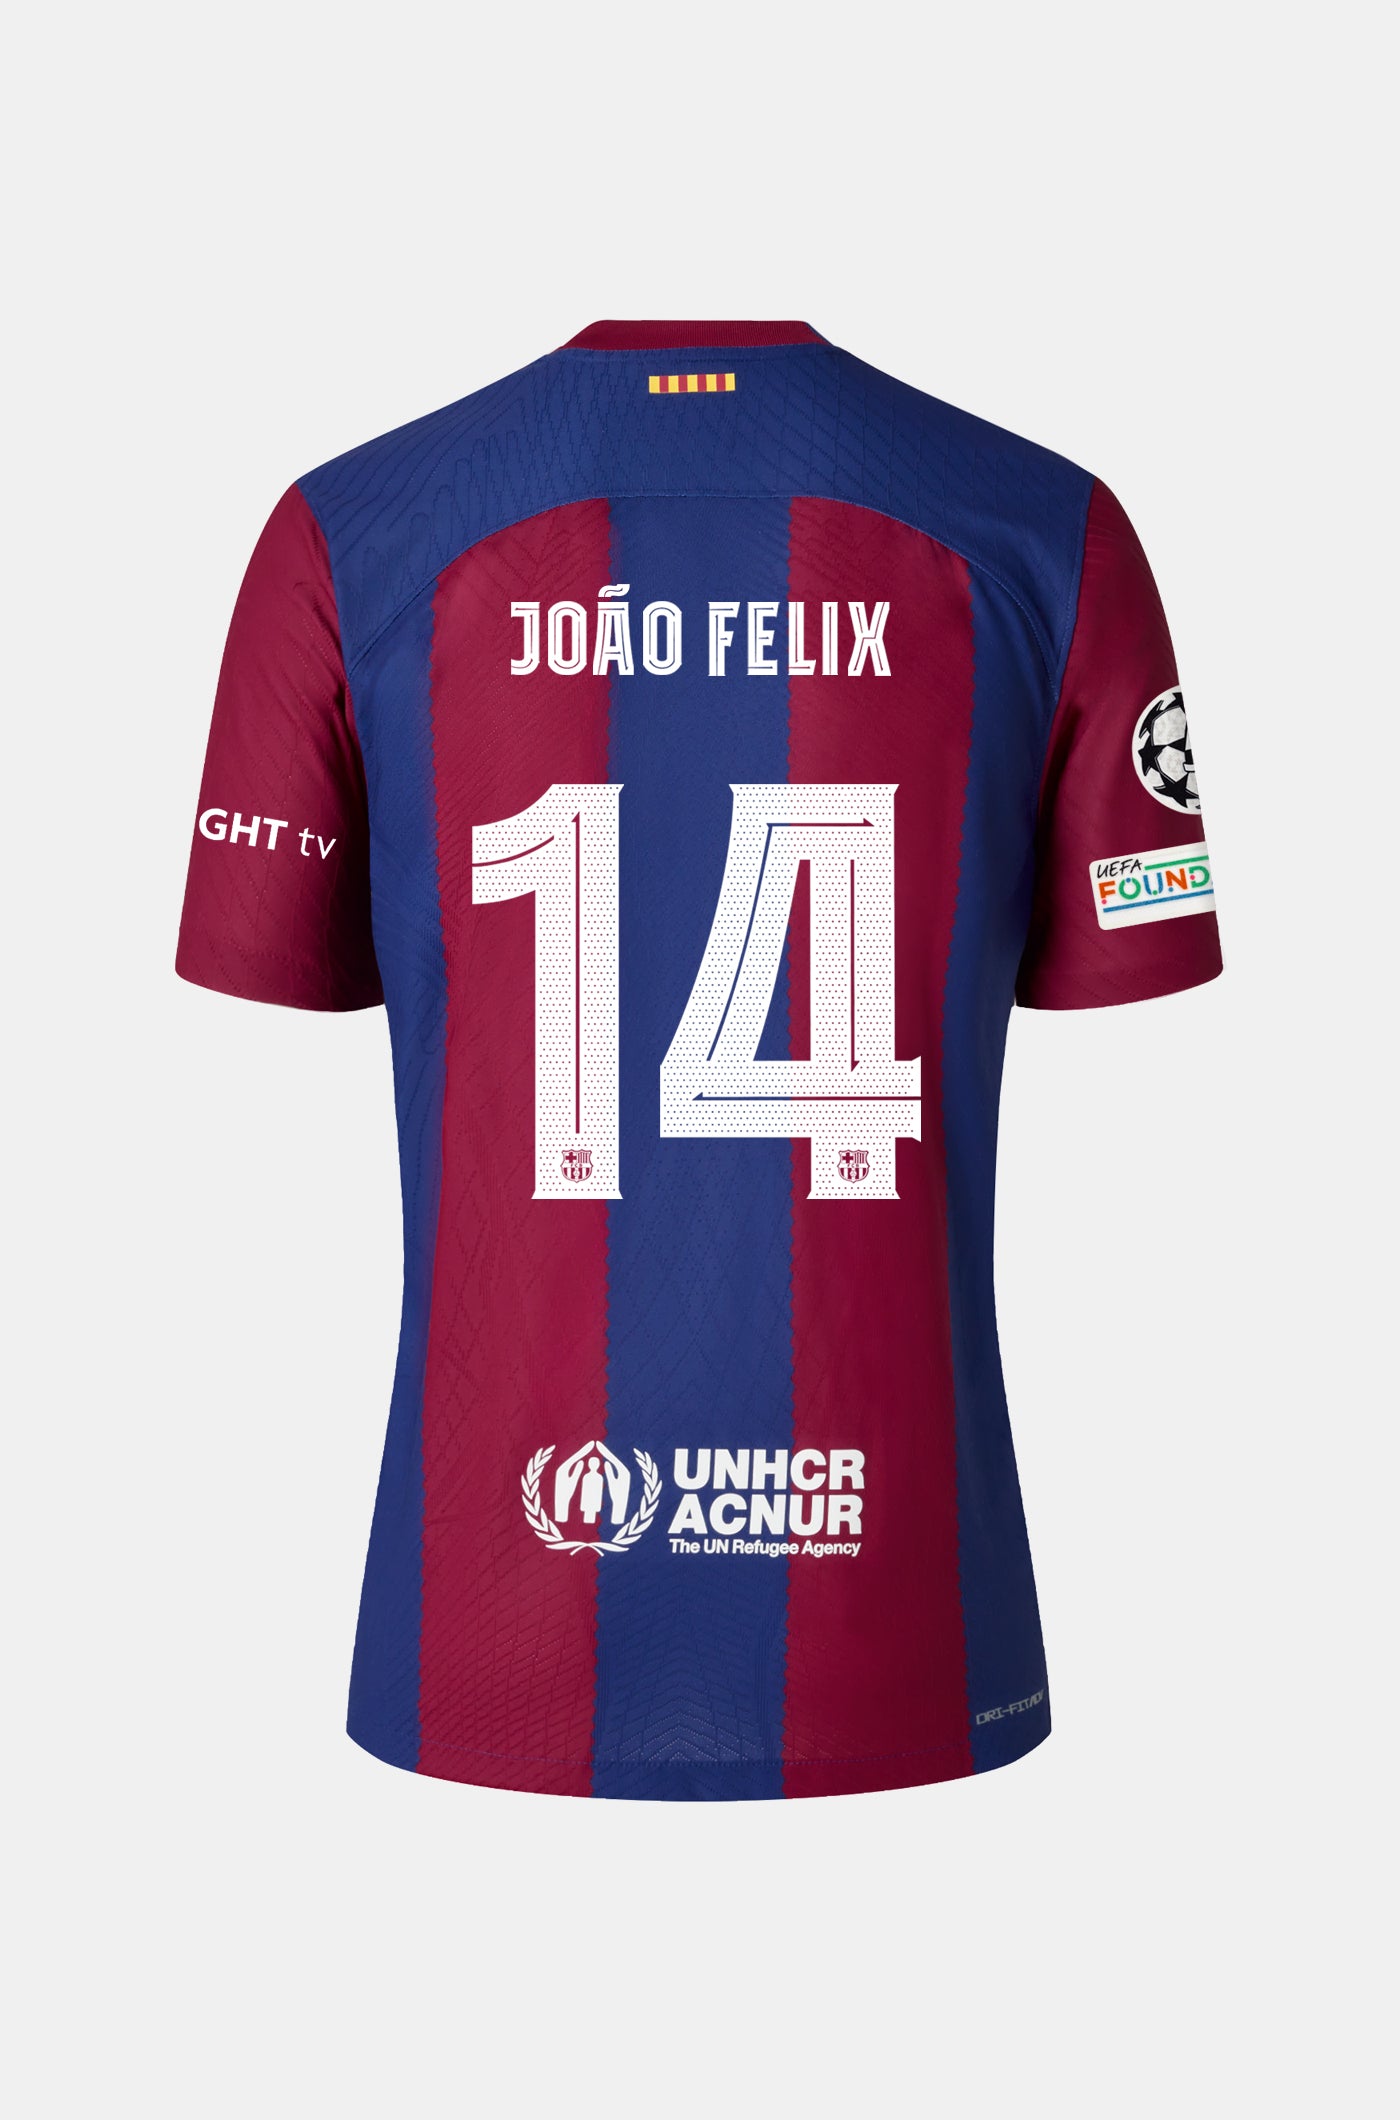 UCL FC Barcelona Home Shirt 23/24 Player's Edition - Women - JOÃO FELIX